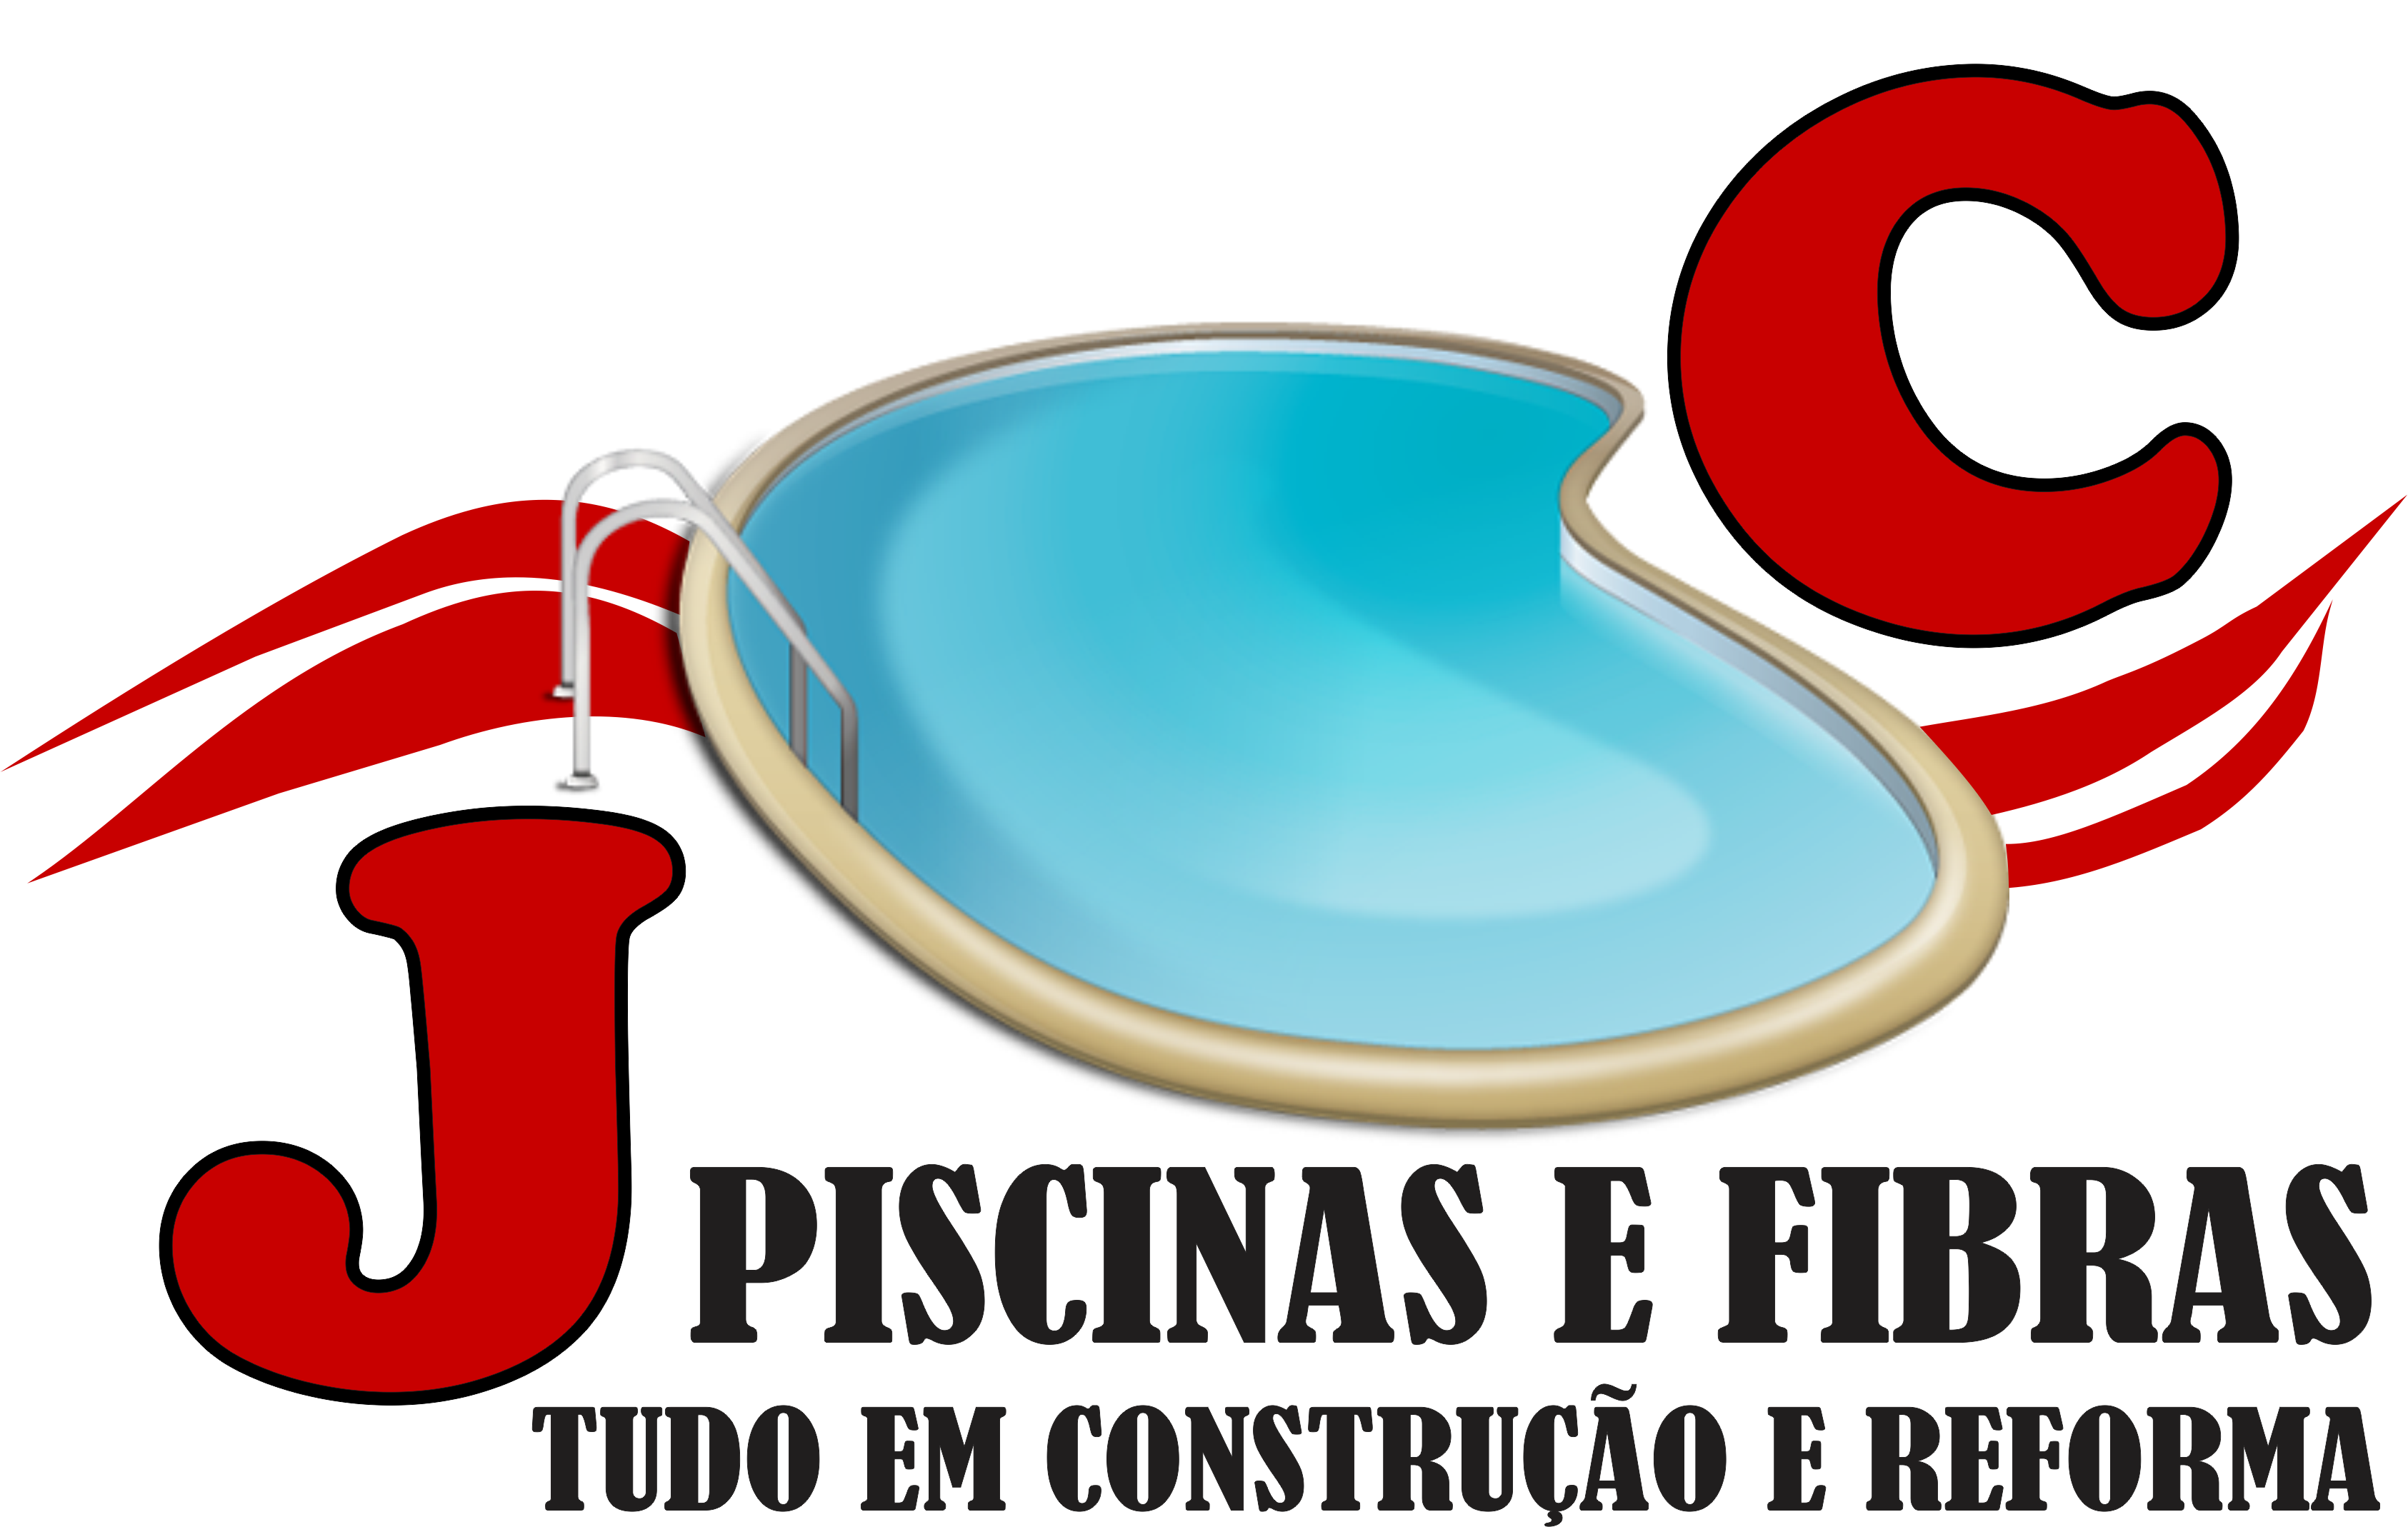 JC PISCINAS E FIBRAS - Manaus, AM